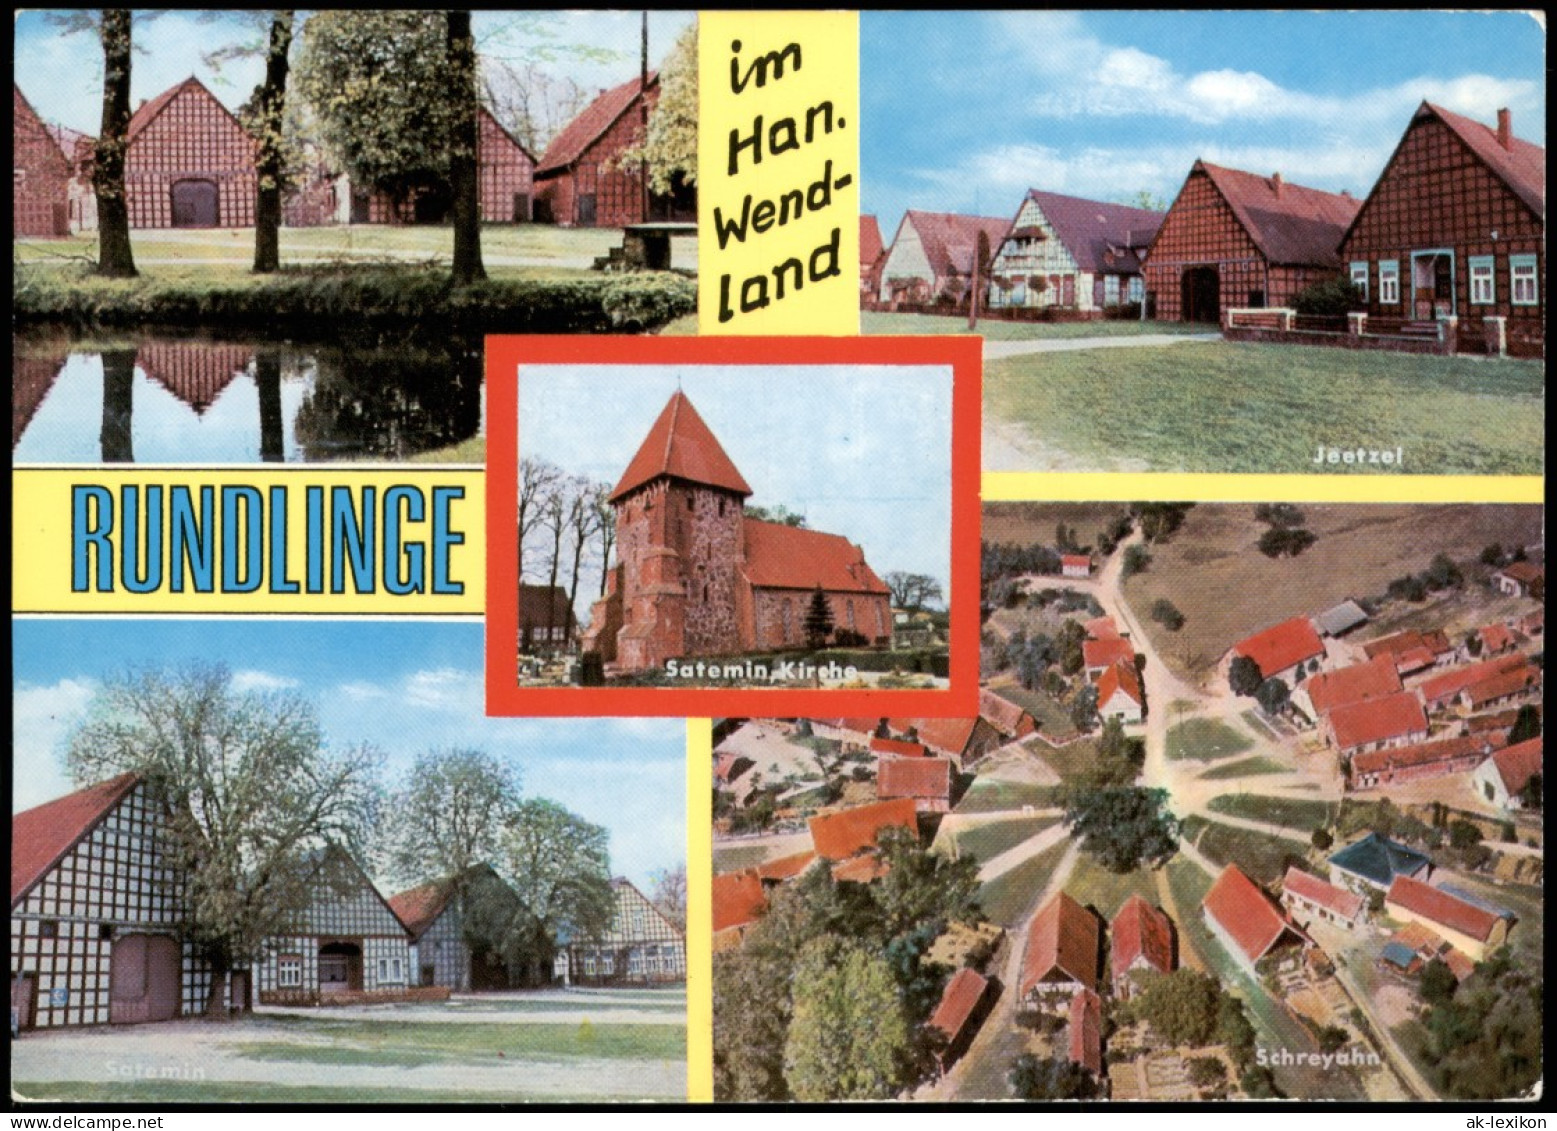 Jeetzel-Lüchow (Wendland) Runddorf Rundlinge Im Wendland, Ua. Schreyahn 1981 - Lüchow